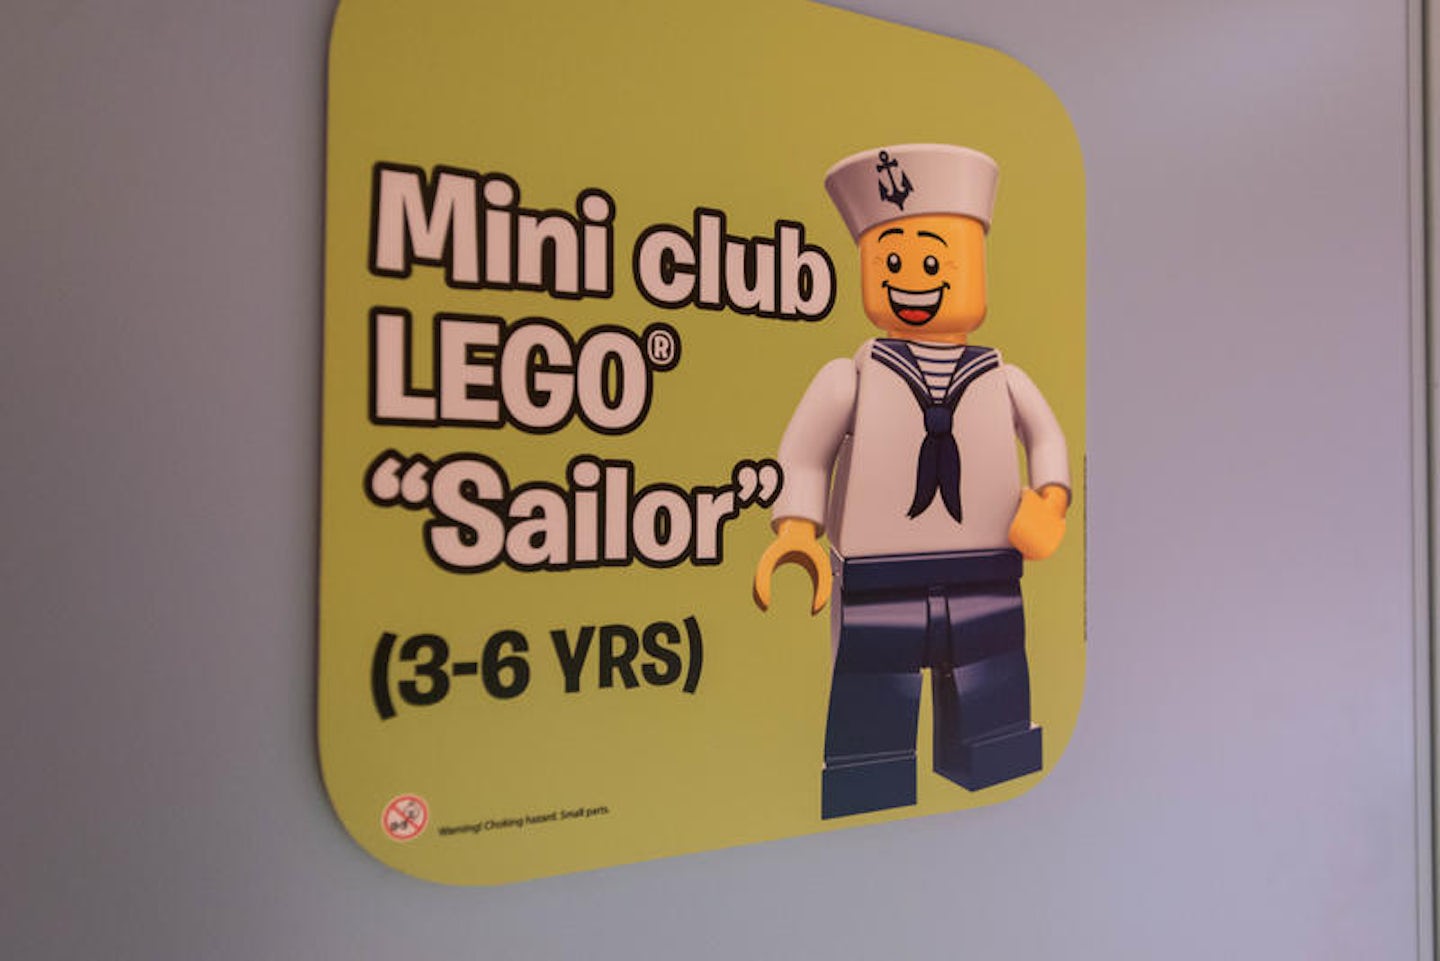 Mini Club Lego "Sailor" on MSC Seaside